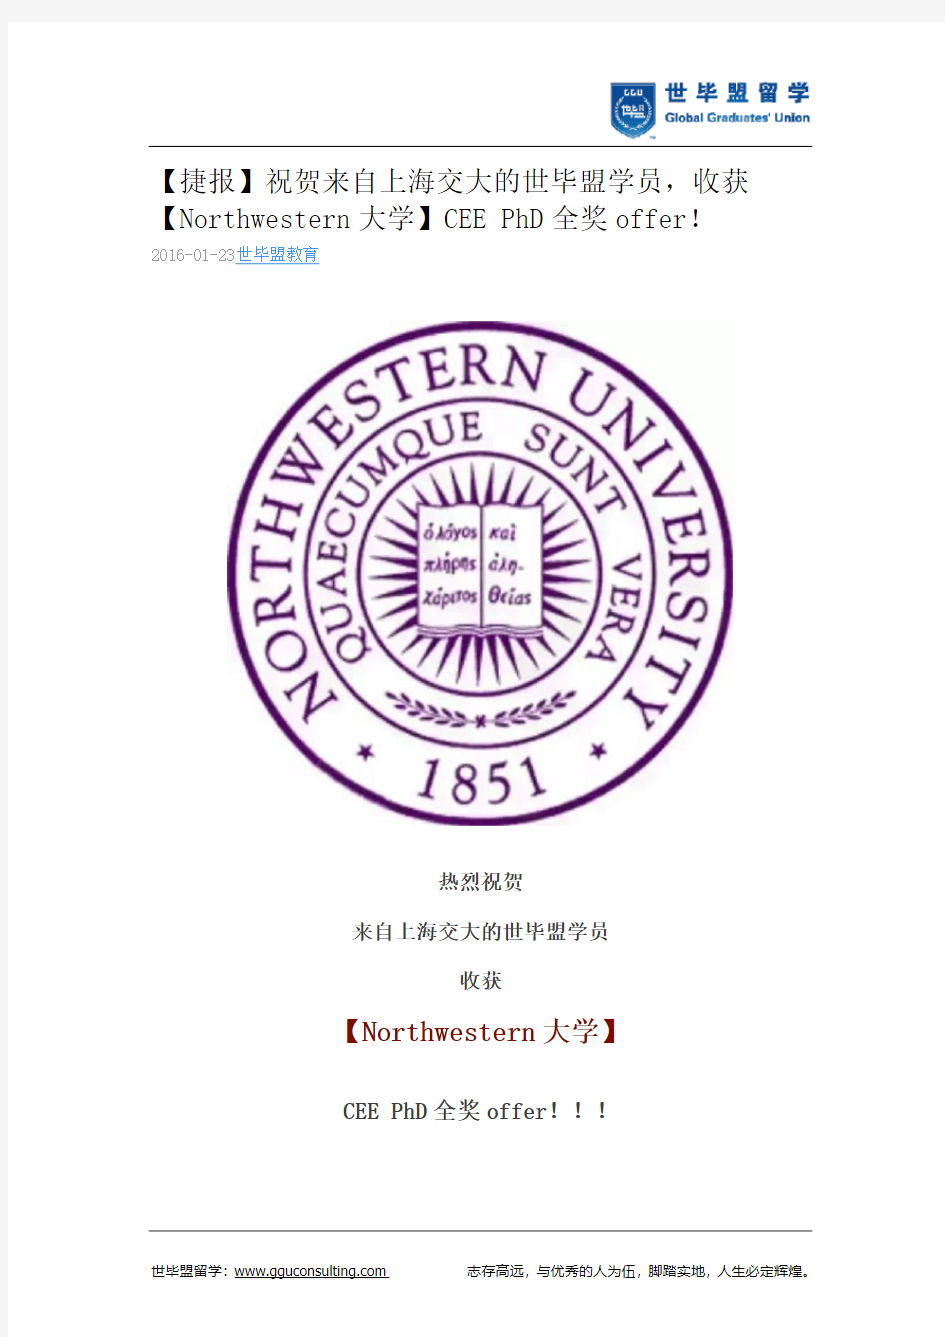 世毕盟战绩：【Northwestern大学】CEE PhD全奖offer!